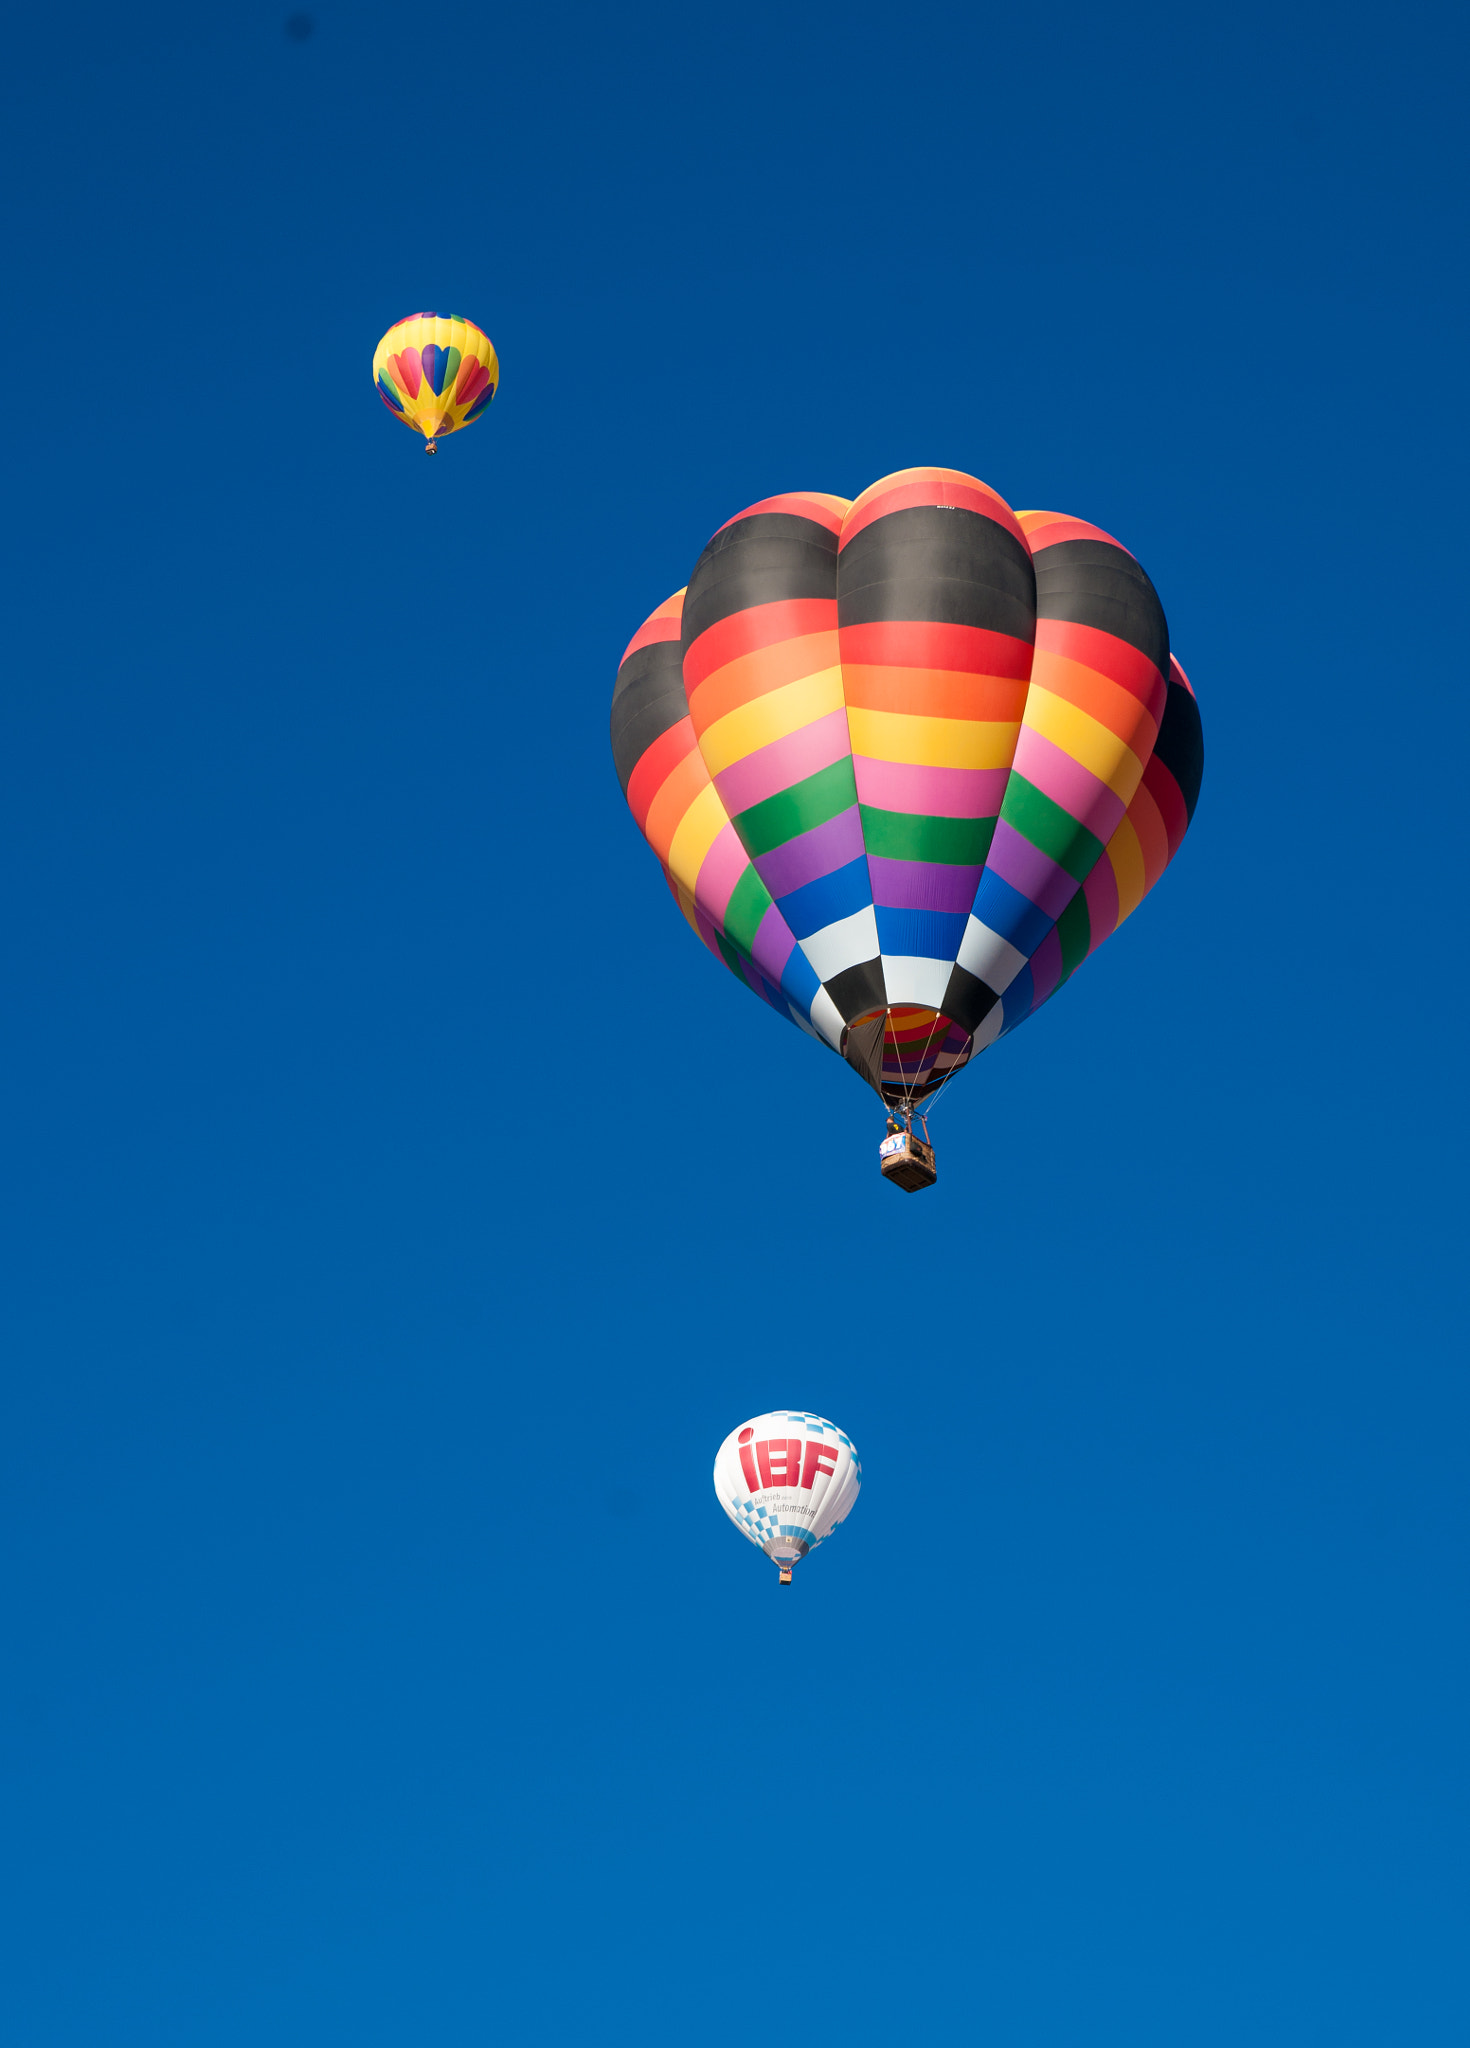 Sony Alpha DSLR-A900 sample photo. 2016 albuquerque balloon fiesta photography